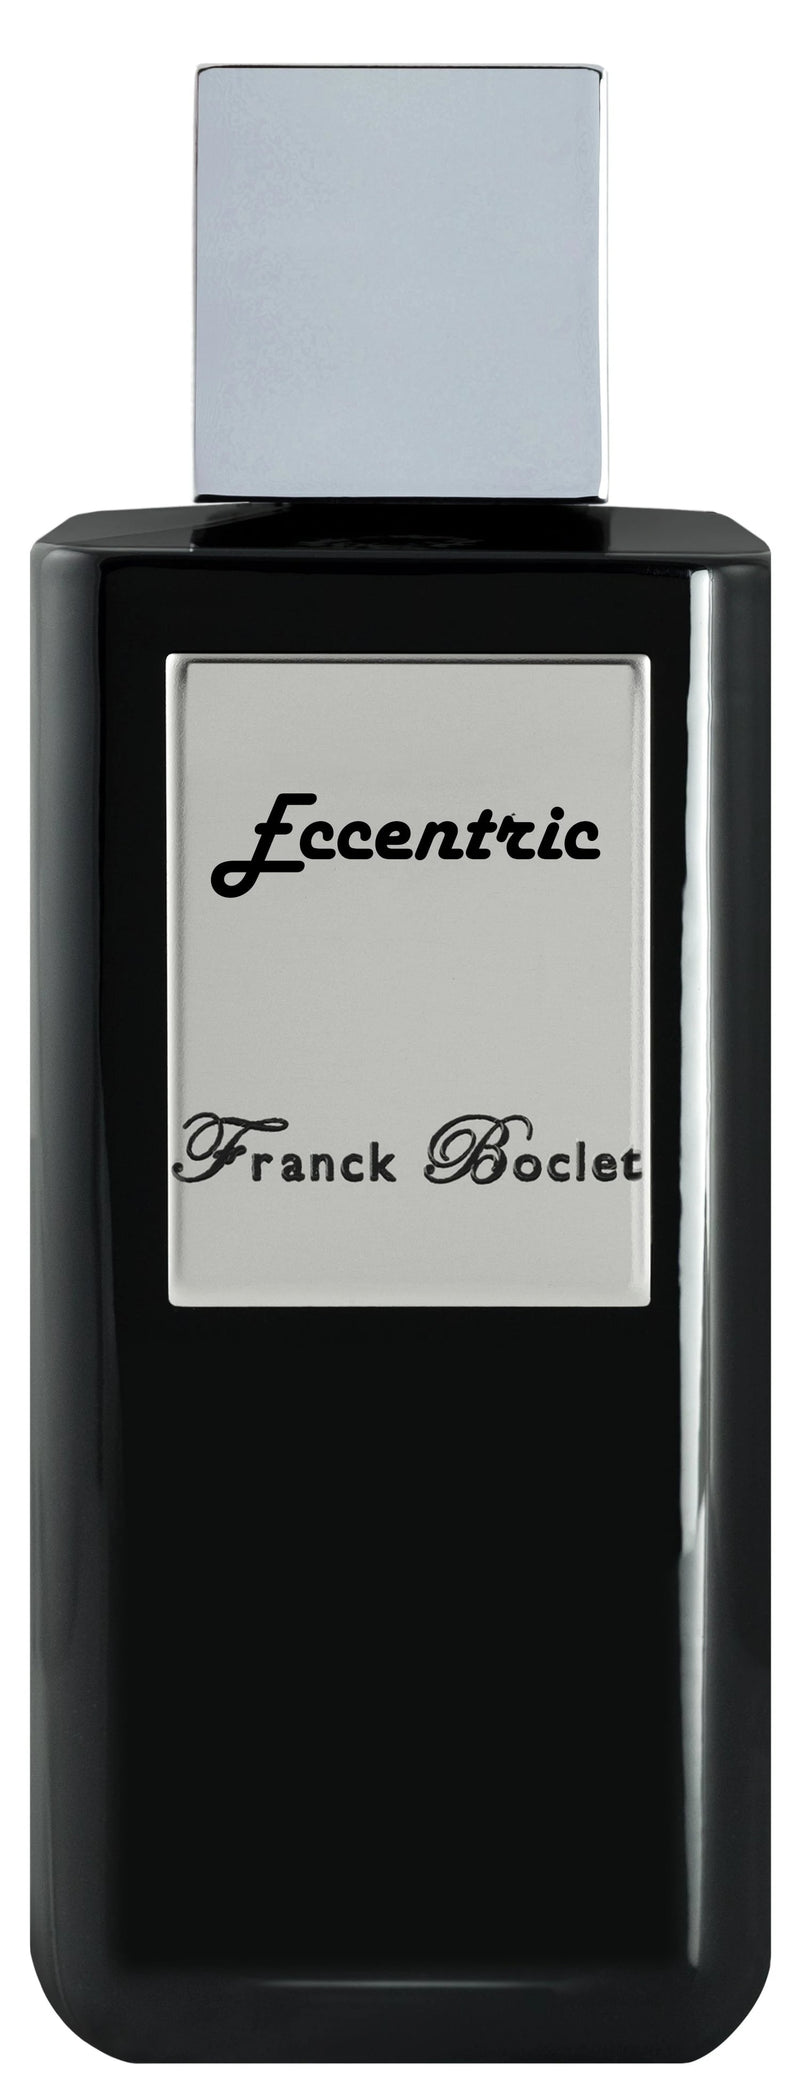 Franck Boclet Eccentric Extrait de Parfum 100ml